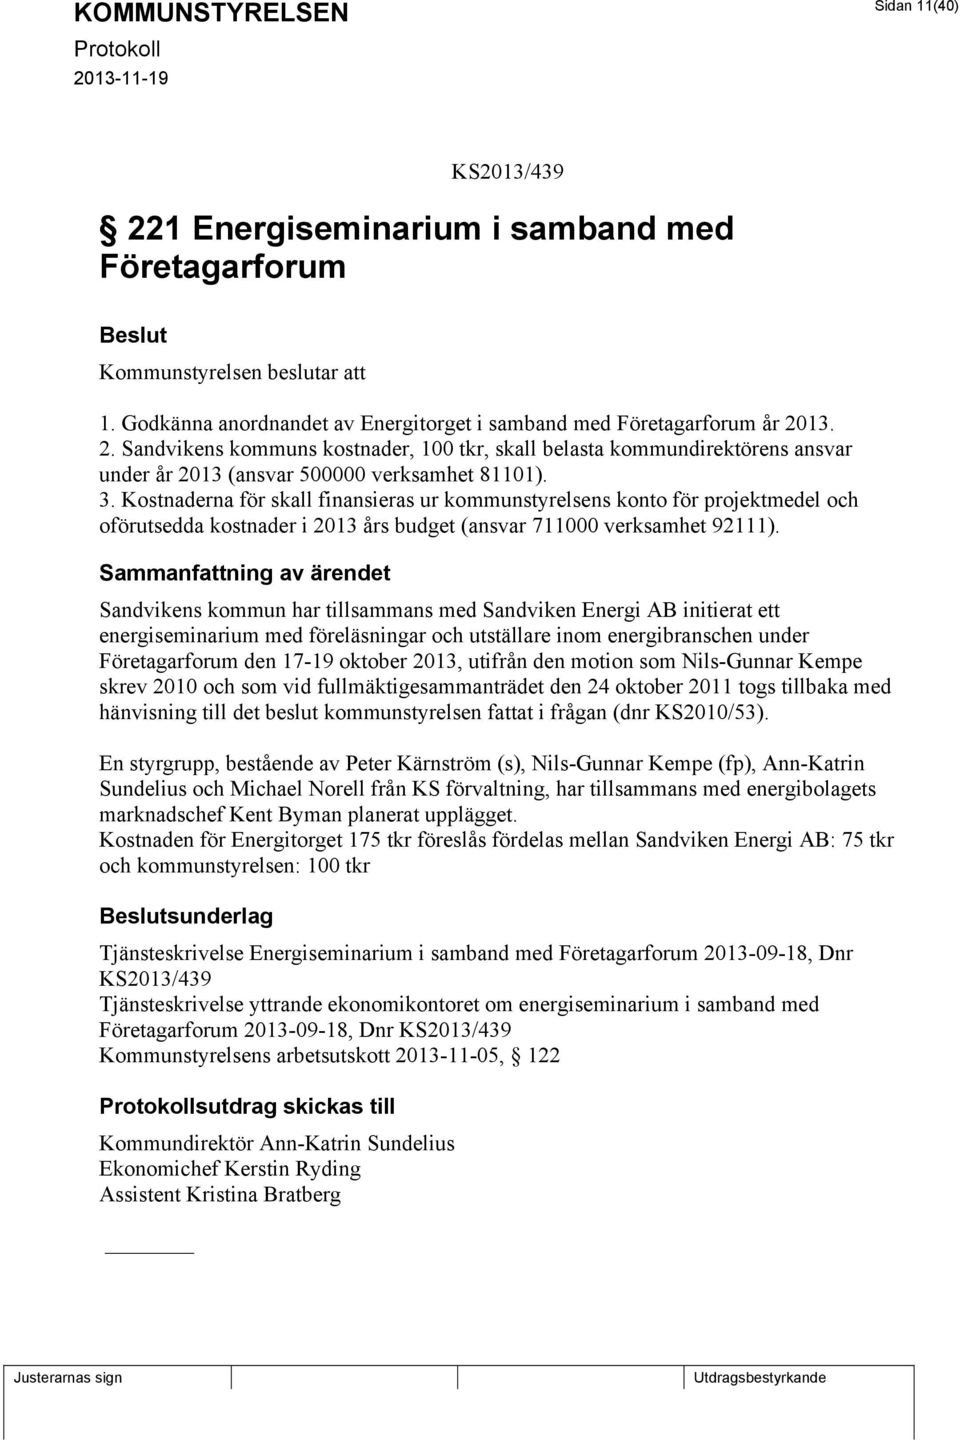 Sandvikens kommun har tillsammans med Sandviken Energi AB initierat ett energiseminarium med föreläsningar och utställare inom energibranschen under Företagarforum den 17-19 oktober 2013, utifrån den